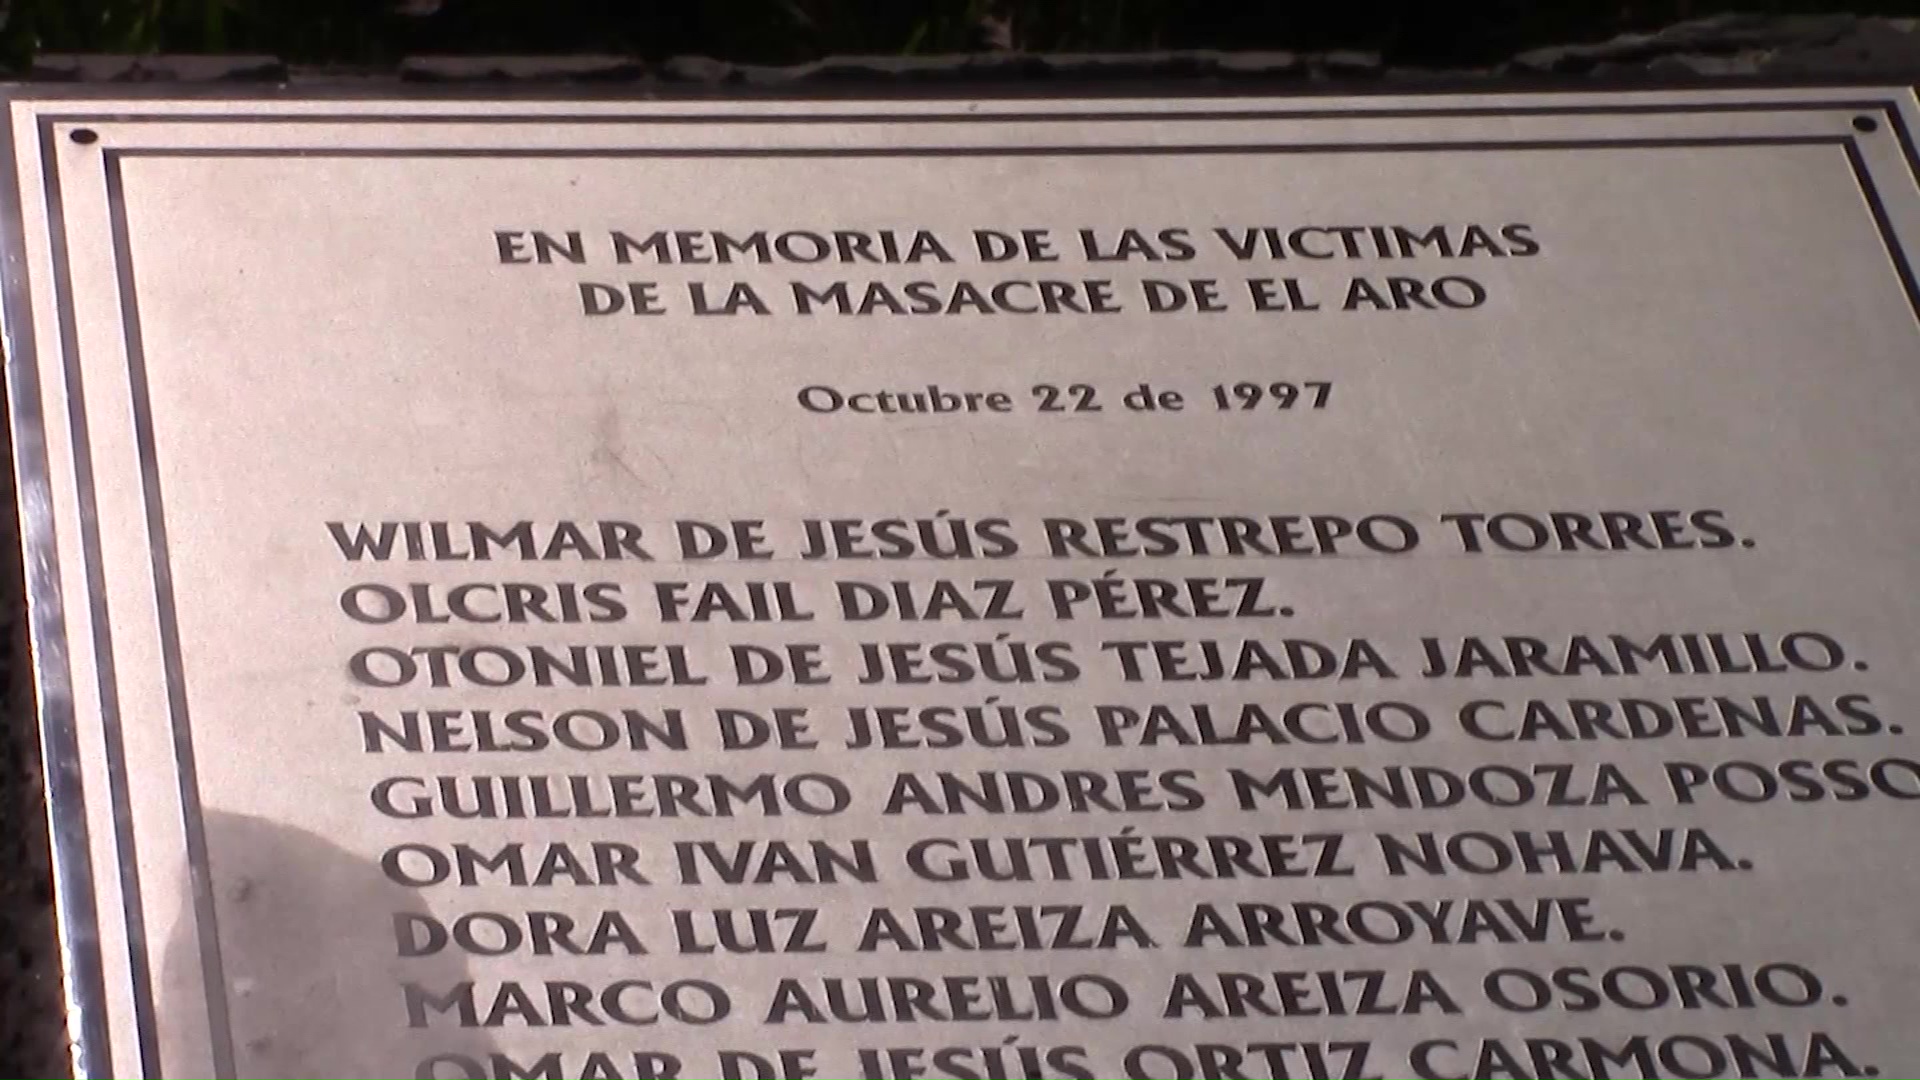 Se cumplen 24 años de masacre de El Aro, víctimas piden justicia